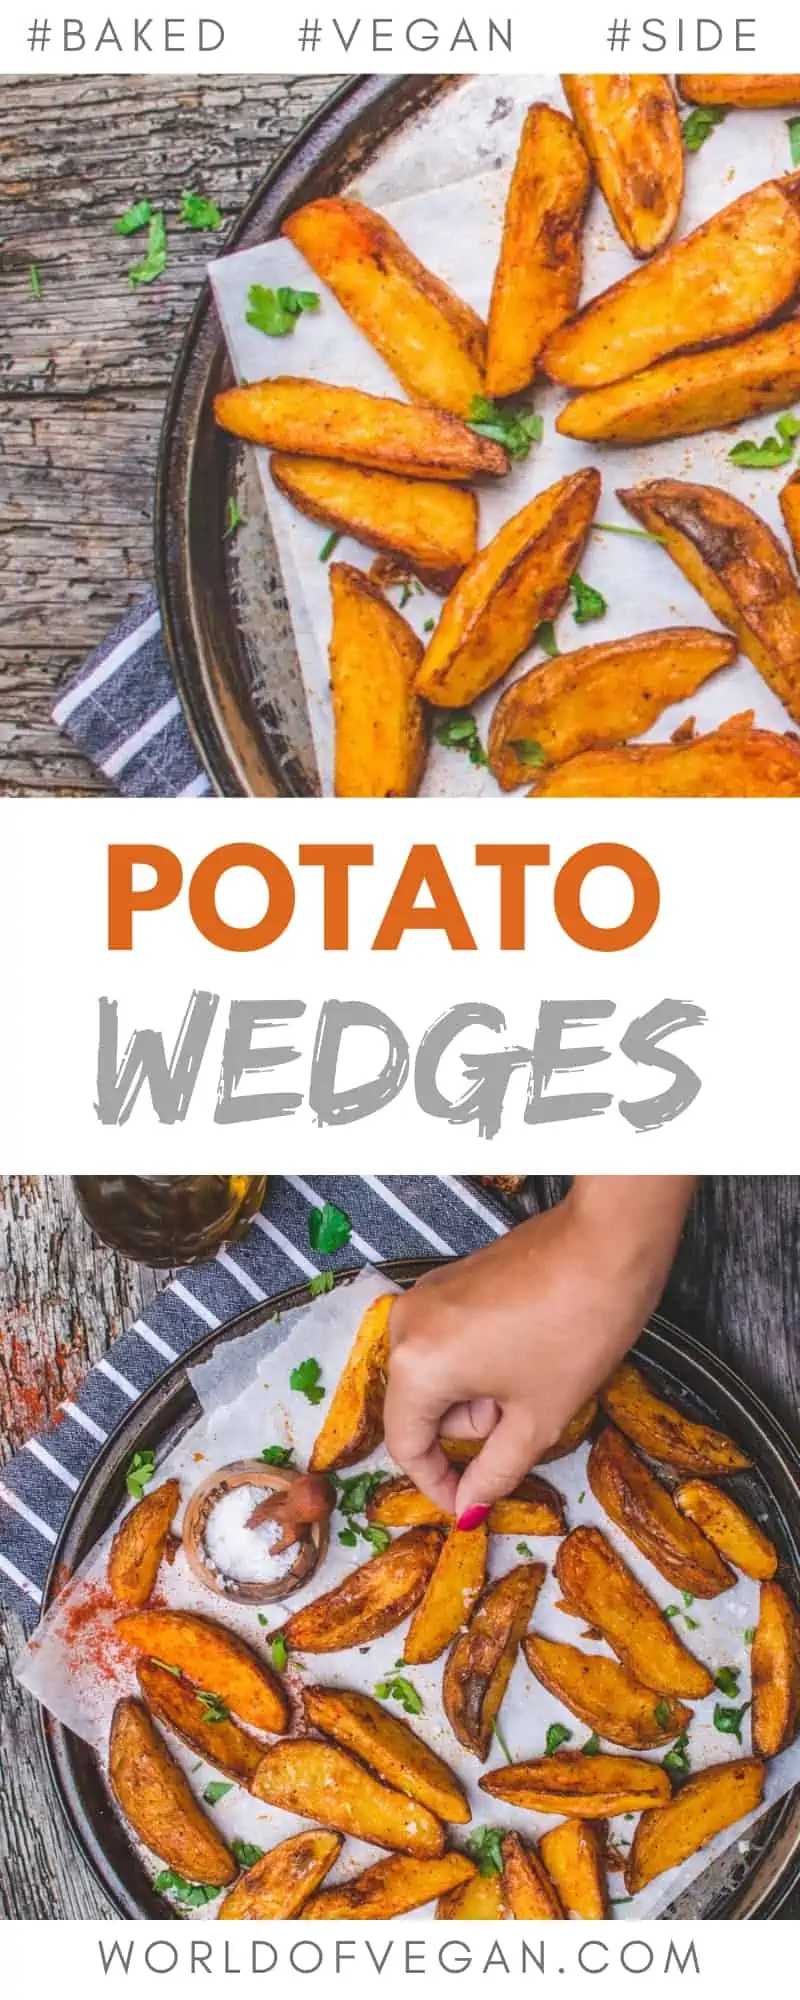 Crispy Baked Potato Wedges | World of Vegan | #potatoes #wedges #baked #vegan #easy #side #worldofvegan